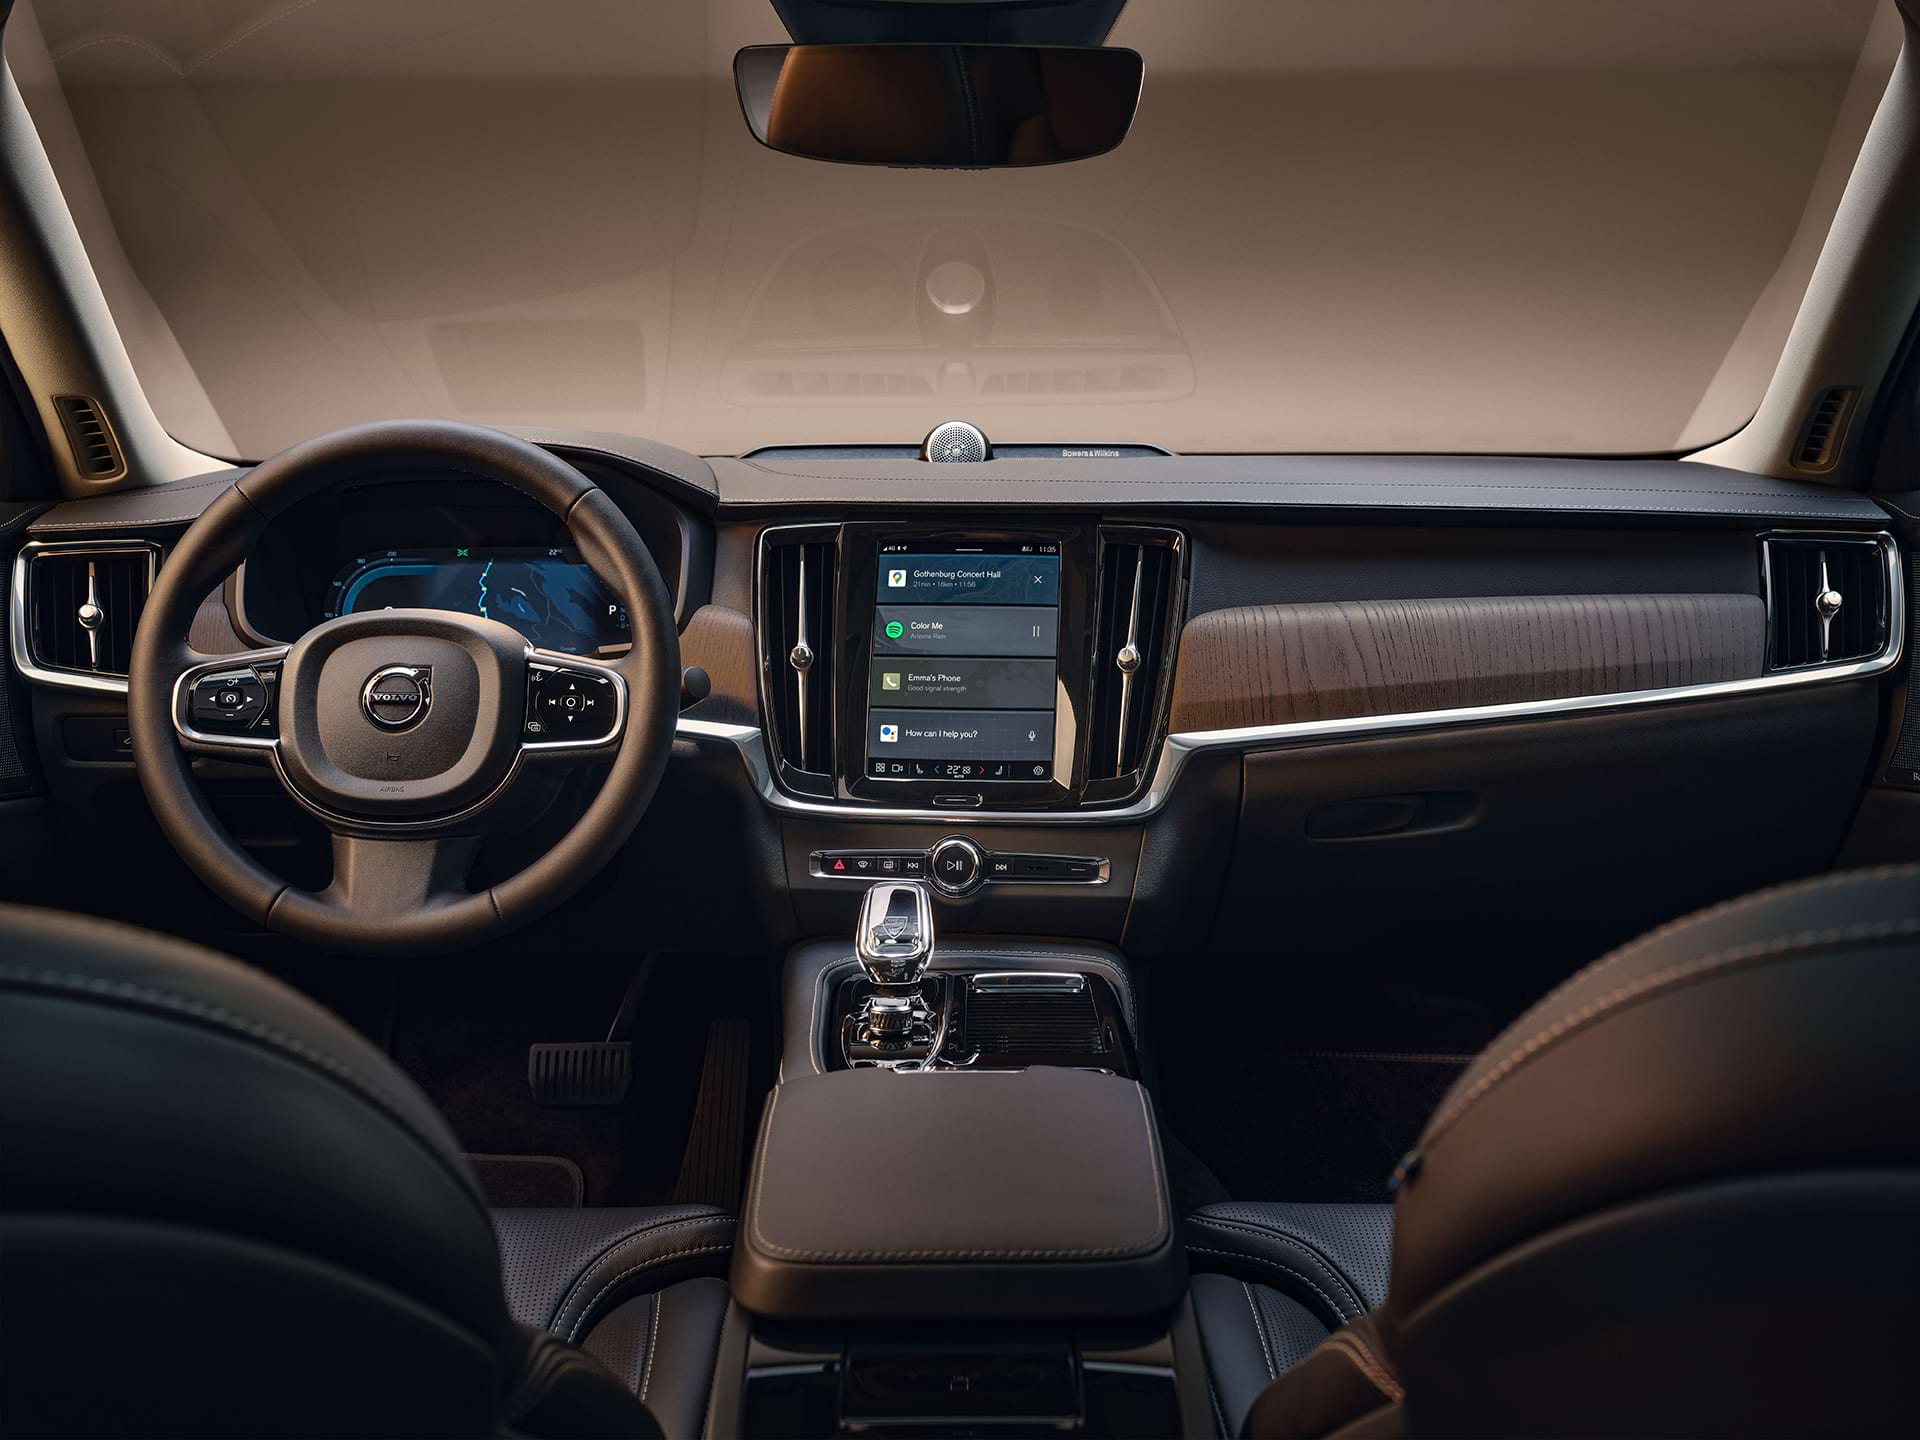 Панел приладів, центральний дисплей, перемикач передач, дисплей водія та кермо автомобіля седана Volvo.